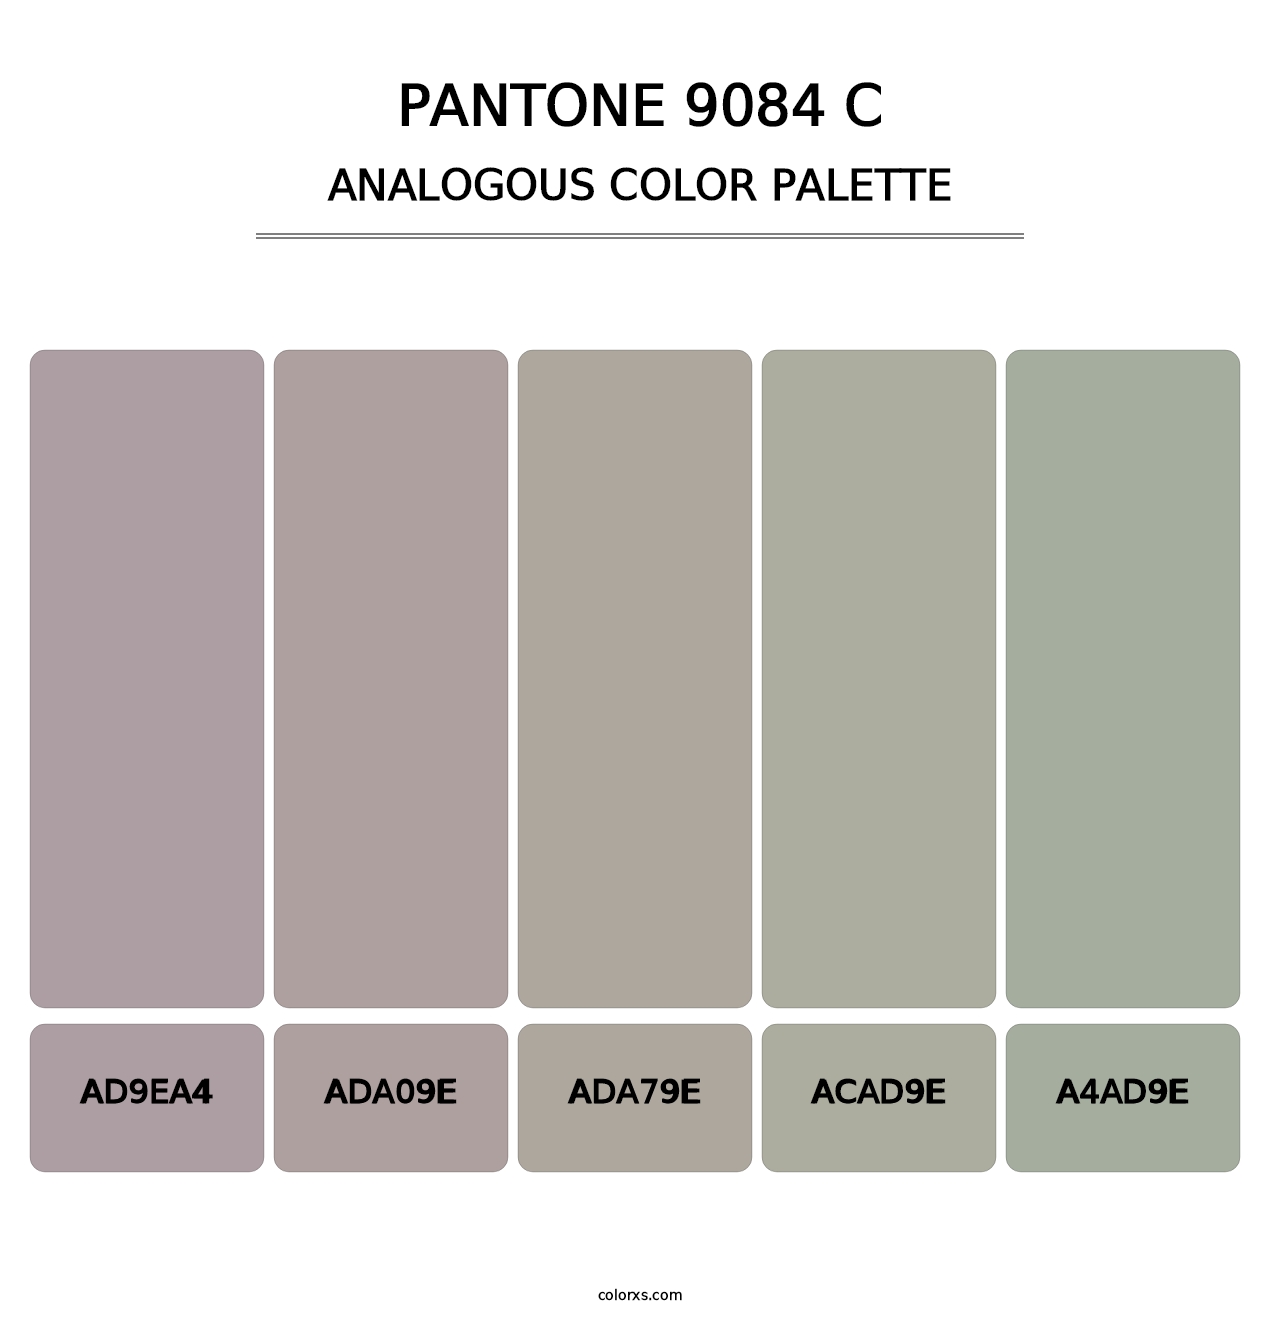 PANTONE 9084 C - Analogous Color Palette